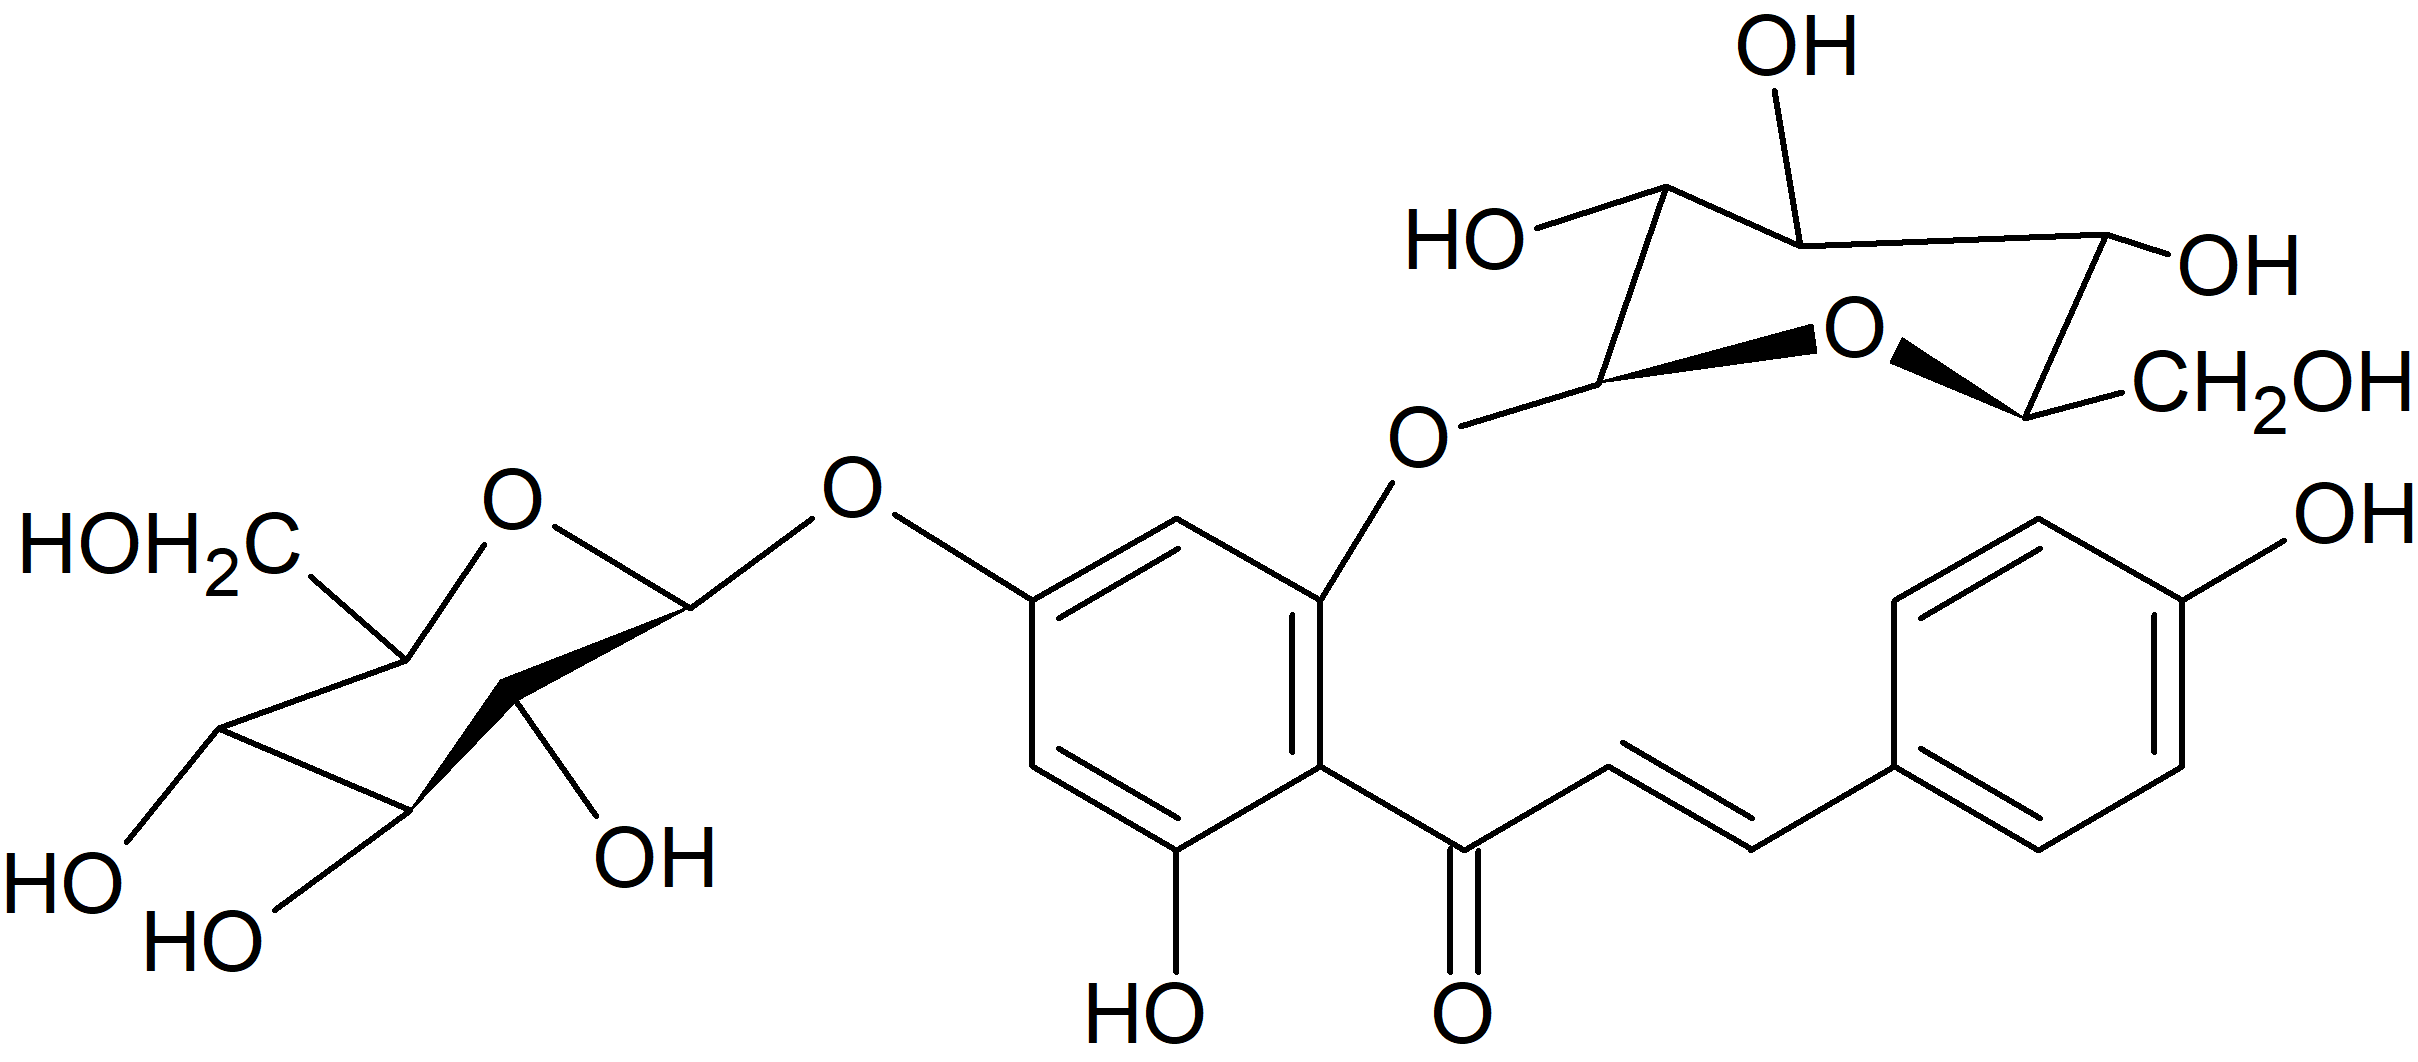 Chalcononaringenin 2', 4'-di-O-glucoside